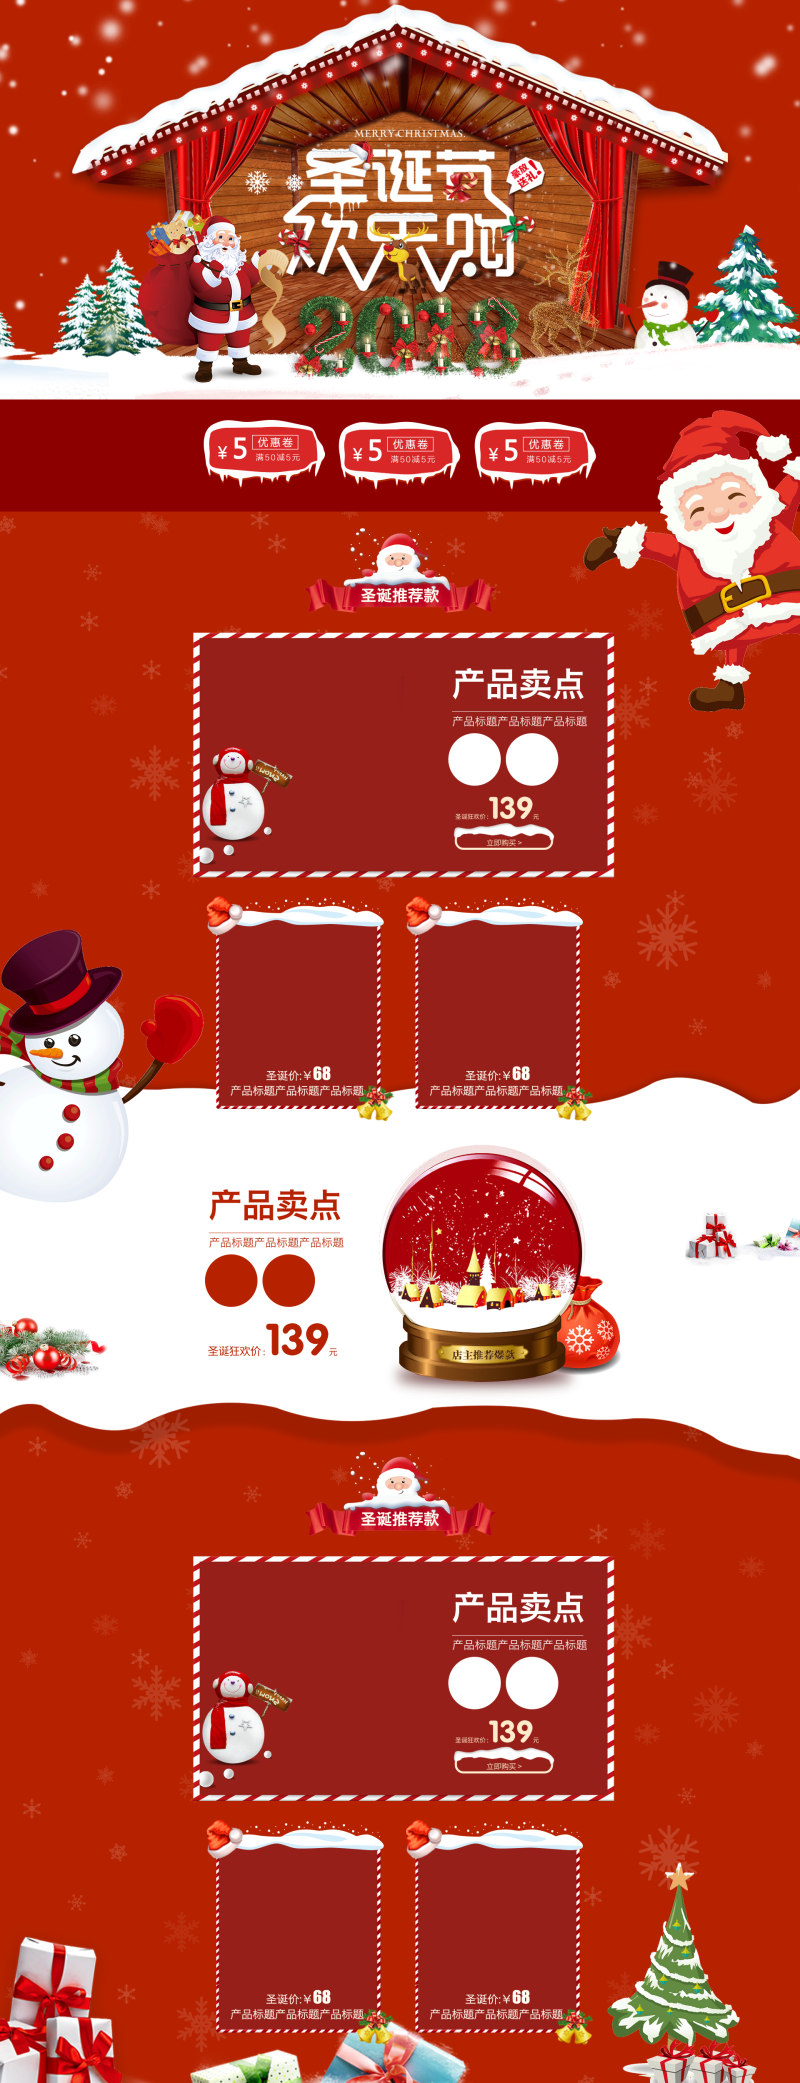 圣诞节欢乐购红色卡通化妆品促销店铺首页